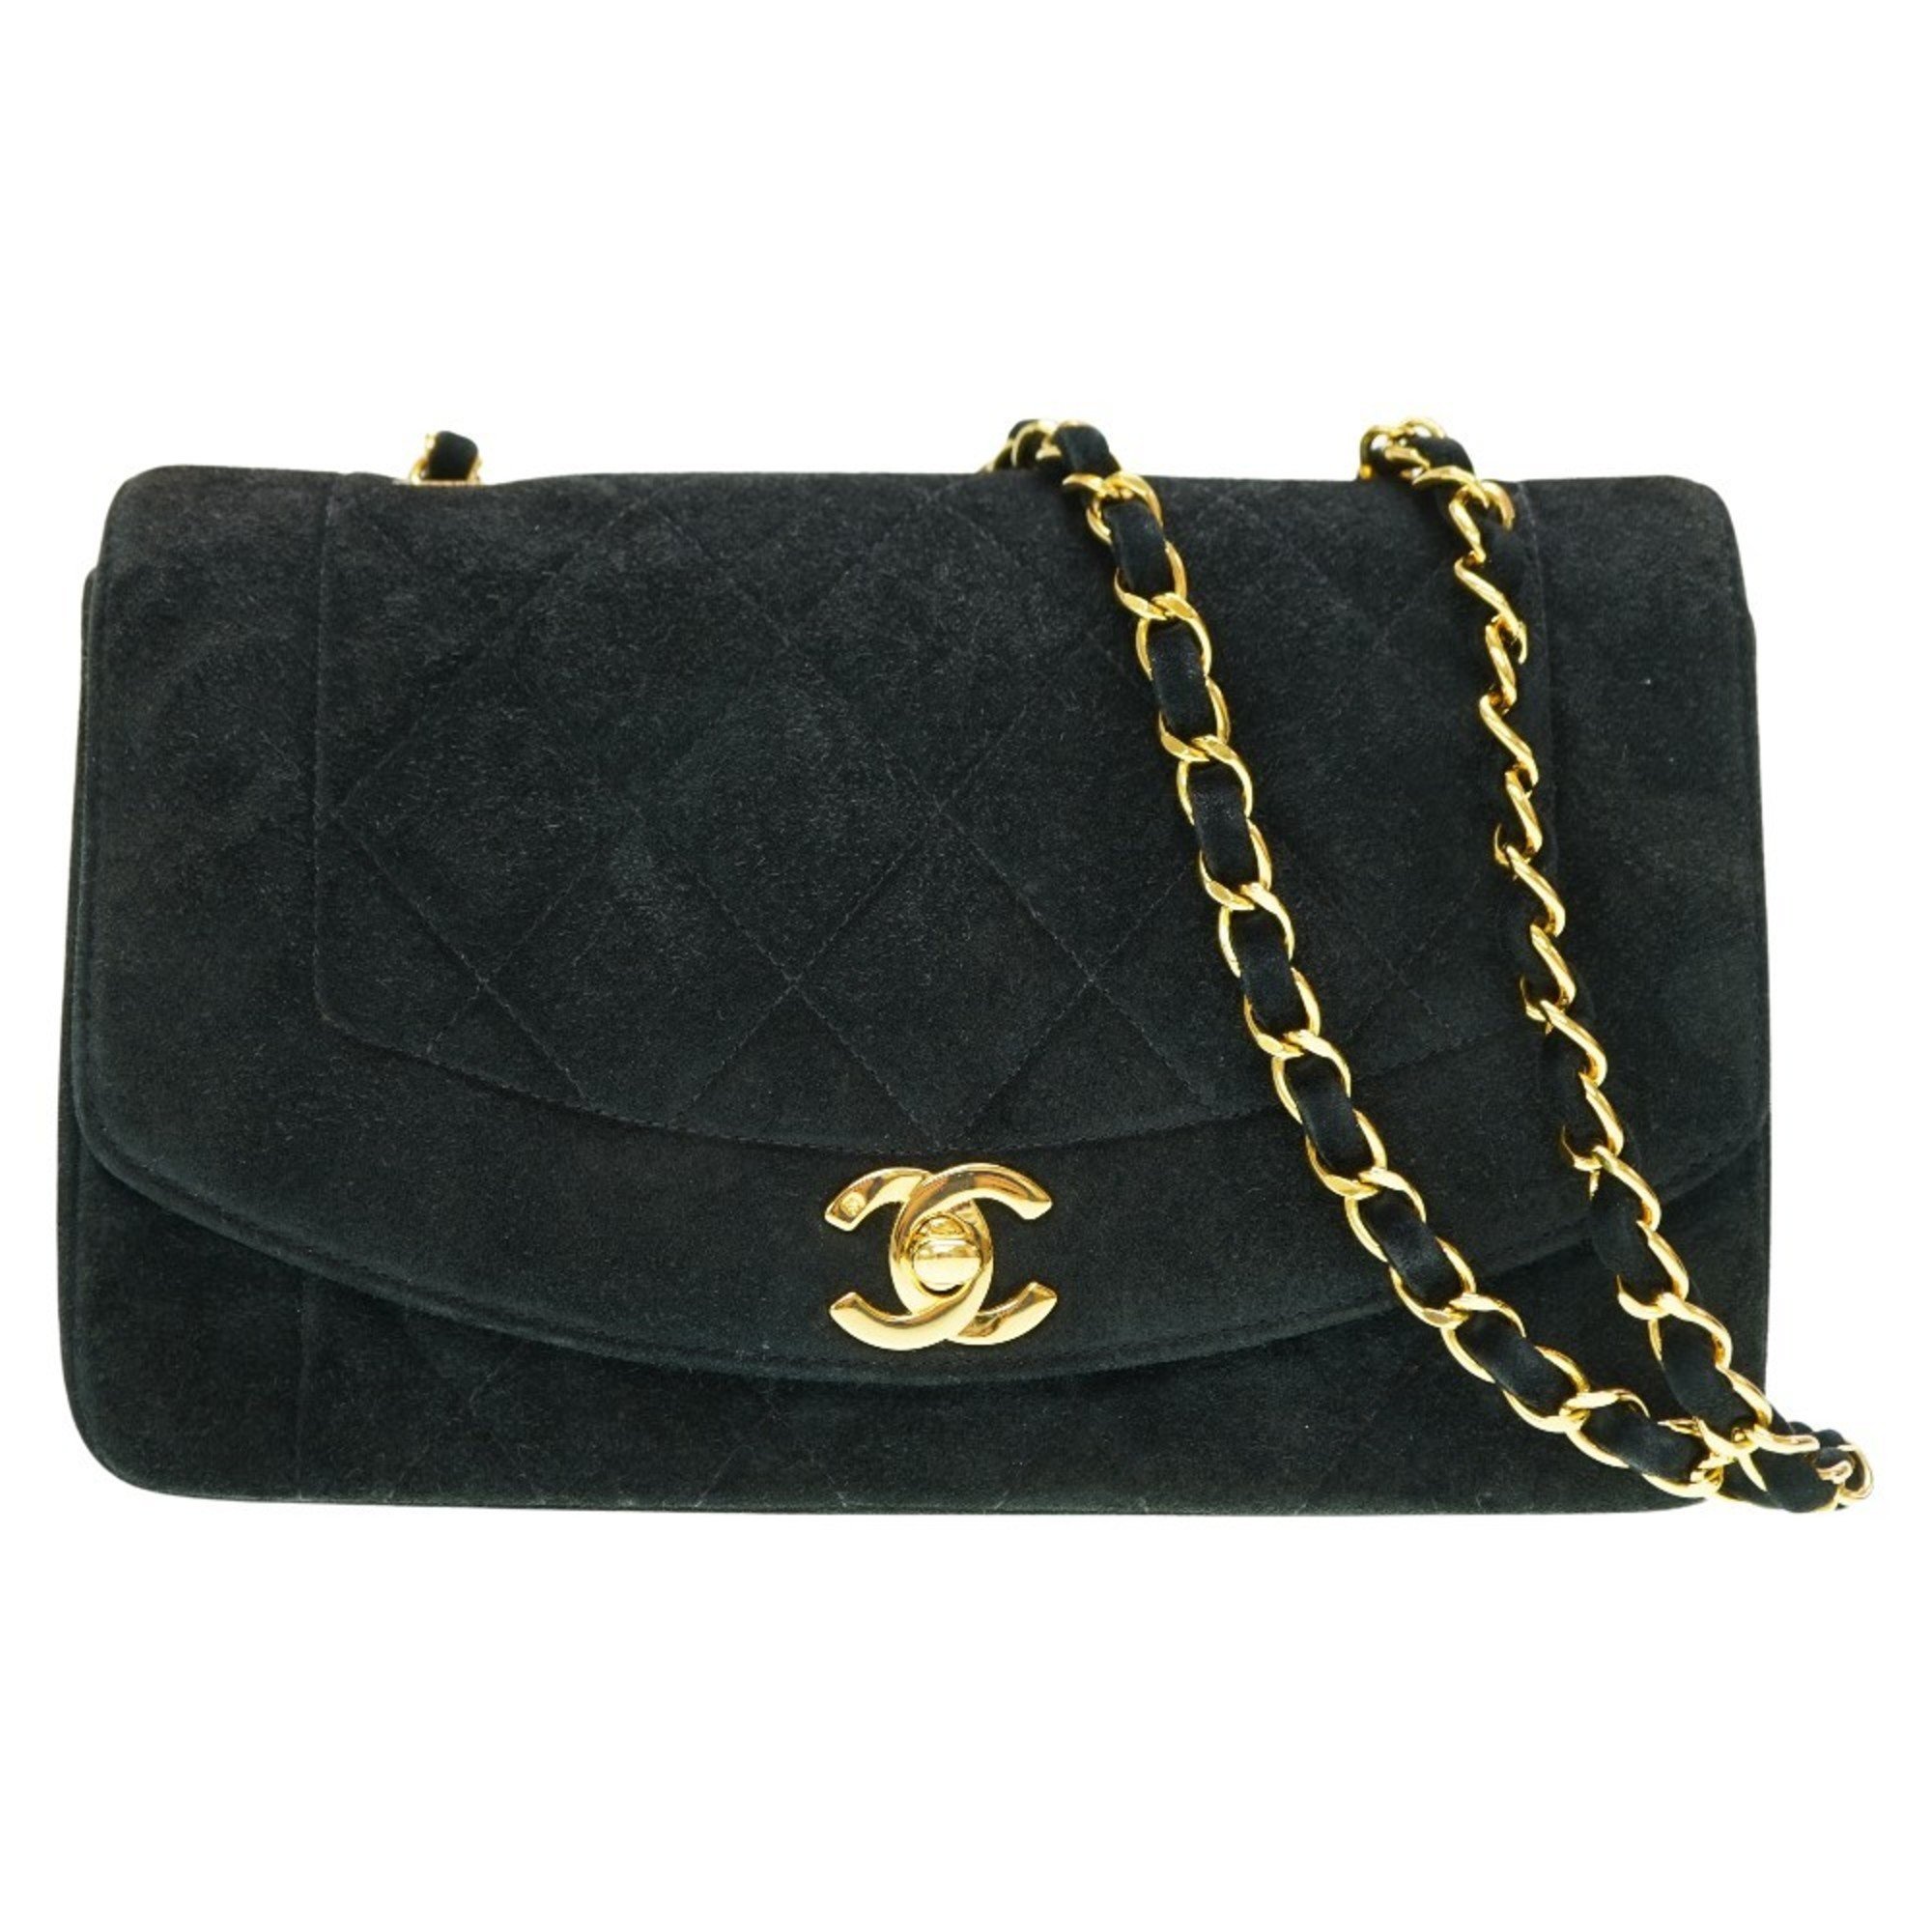 Chanel Diana 22 Suede Matelasse Chain Shoulder Bag Dobris Black 0039CHANEL